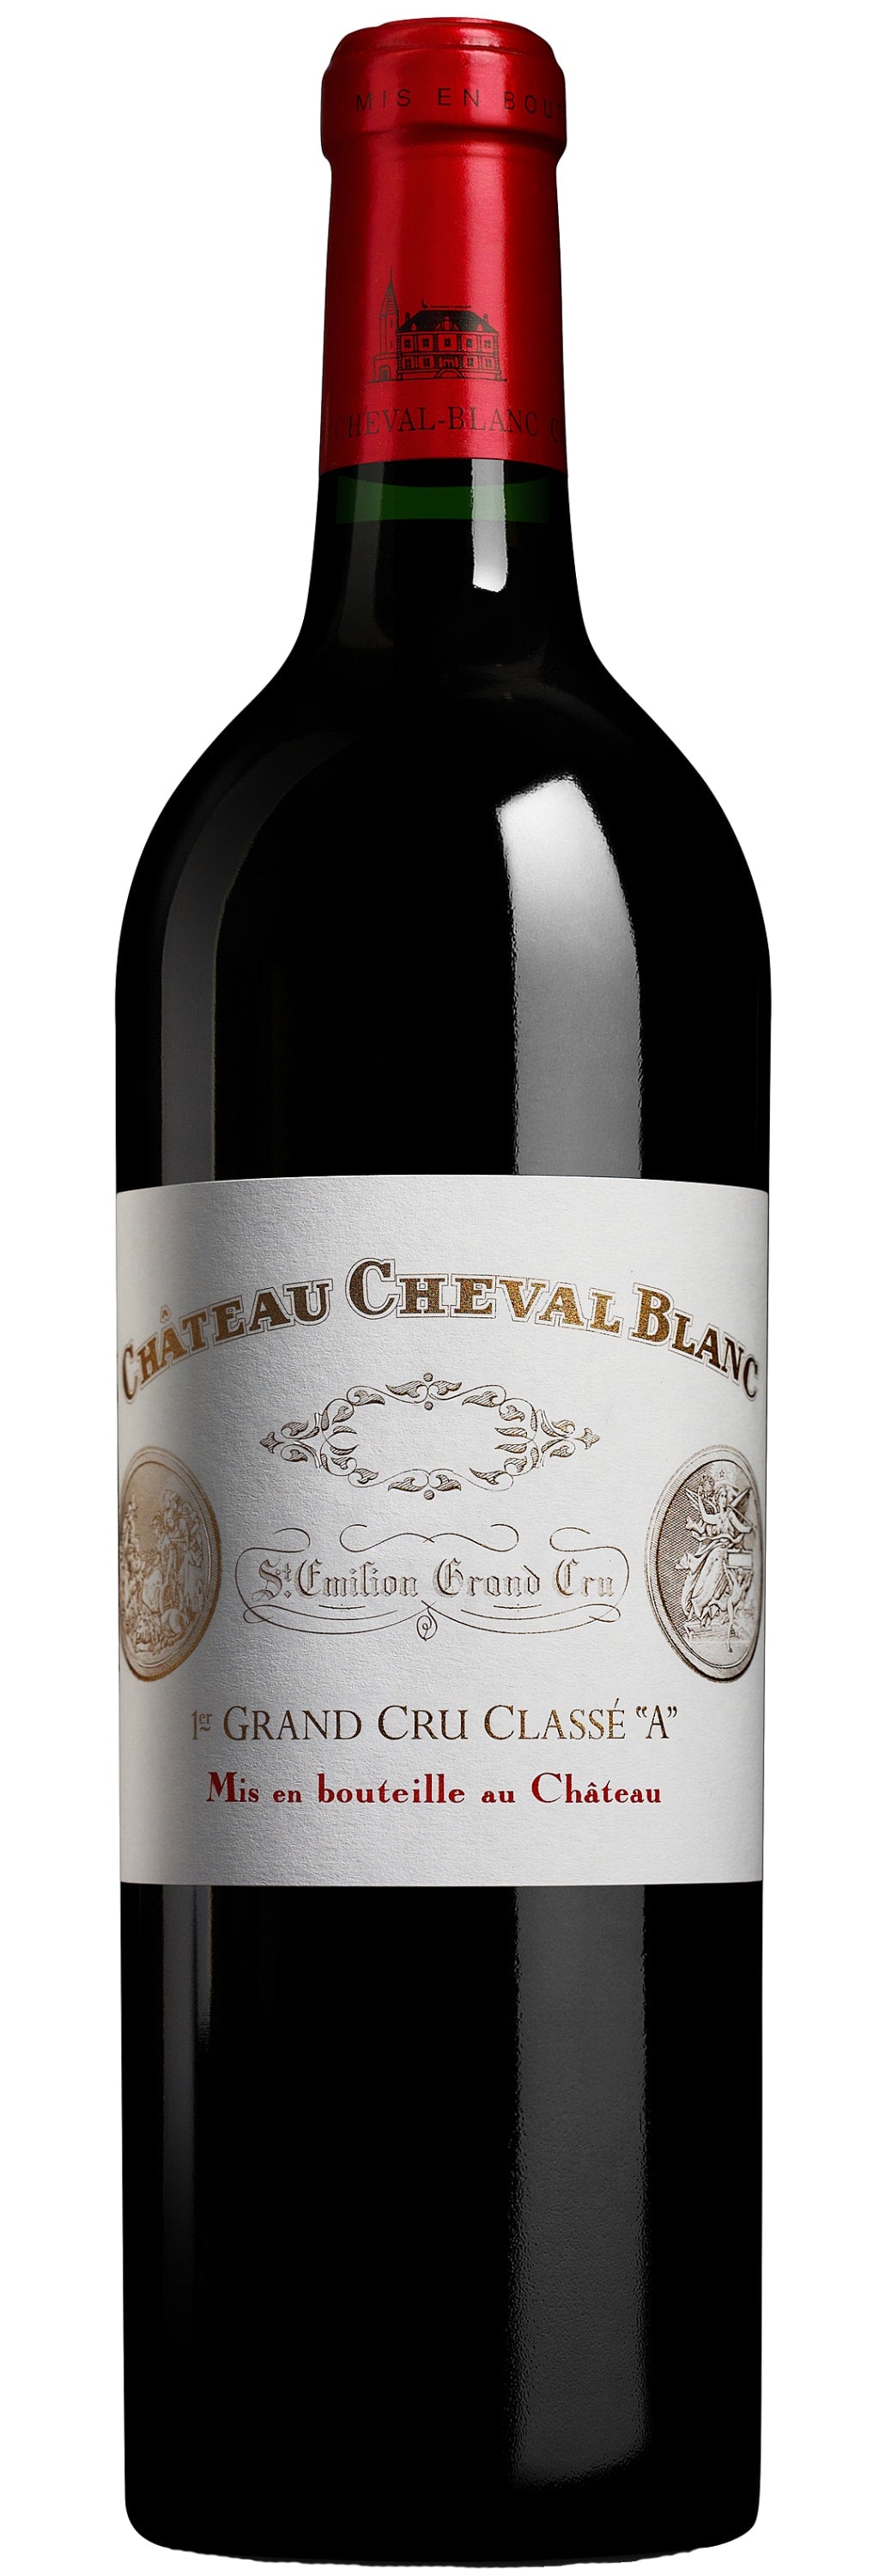 Chateau Cheval Blanc Saint Emilion 2018